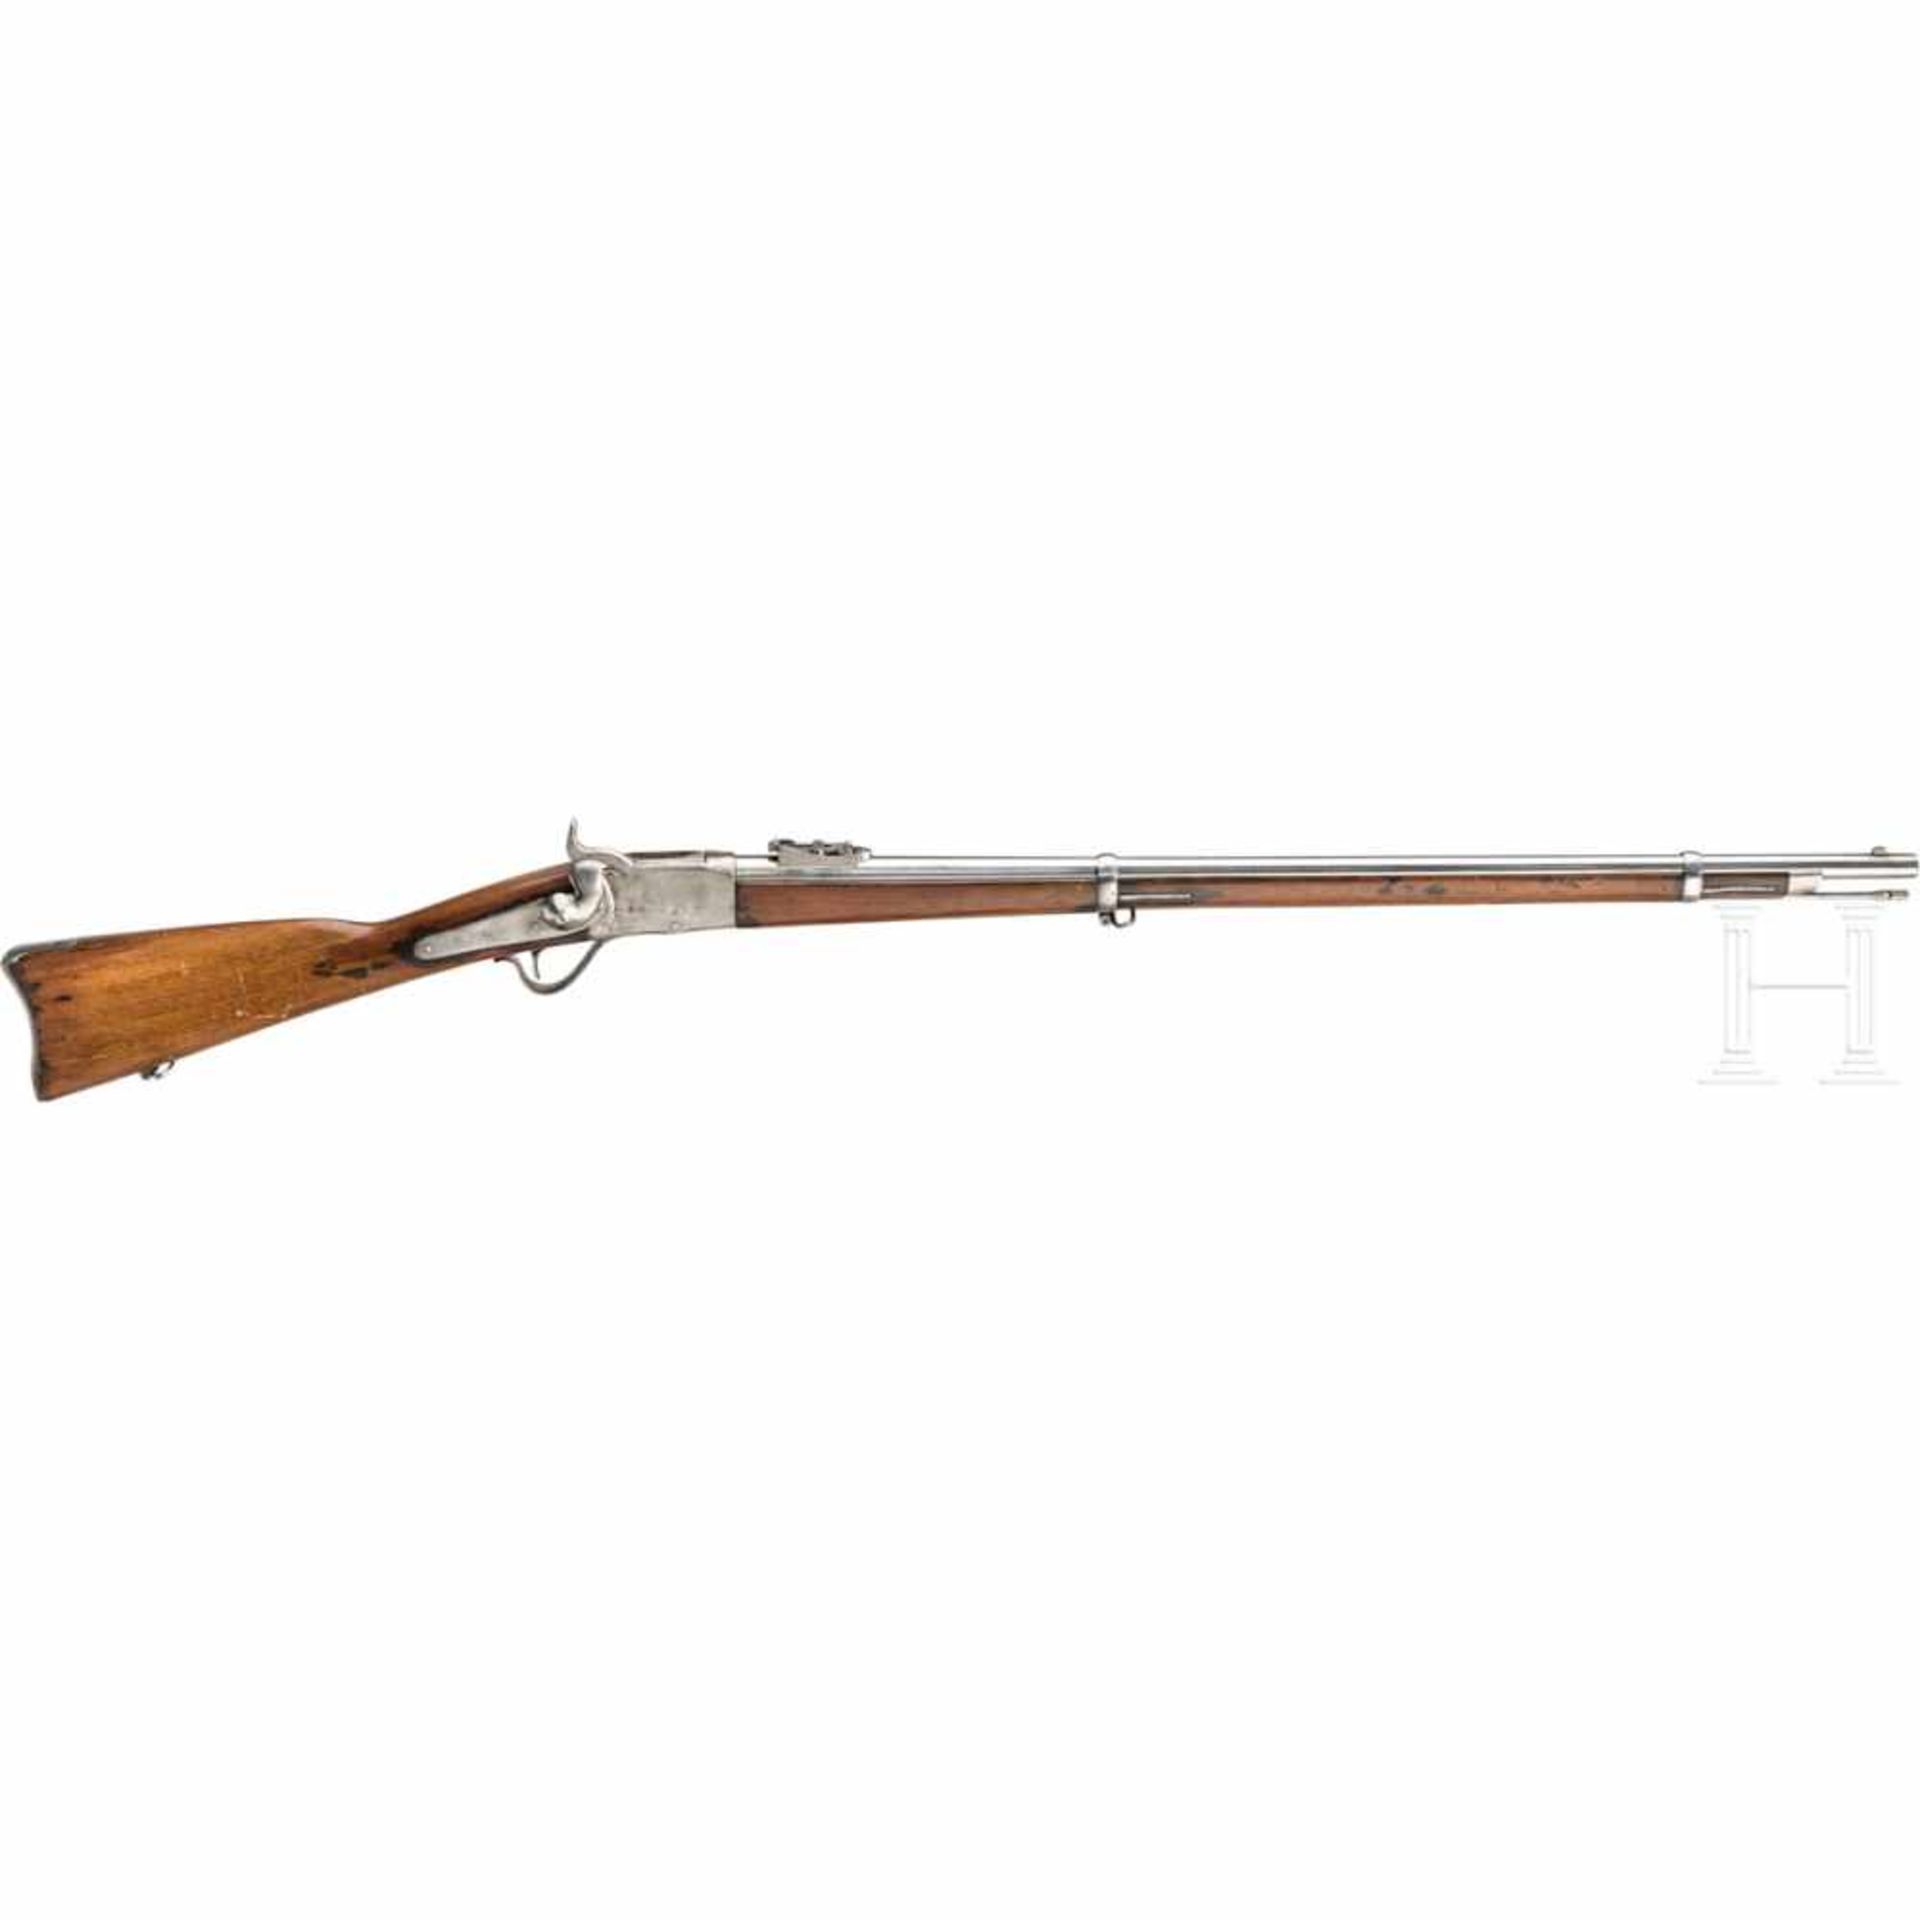 Peabody Military Rifle M 1870Kal. .43, Nr. ohne, Dreifach gezogener, fast blanker Lauf, Länge 33".